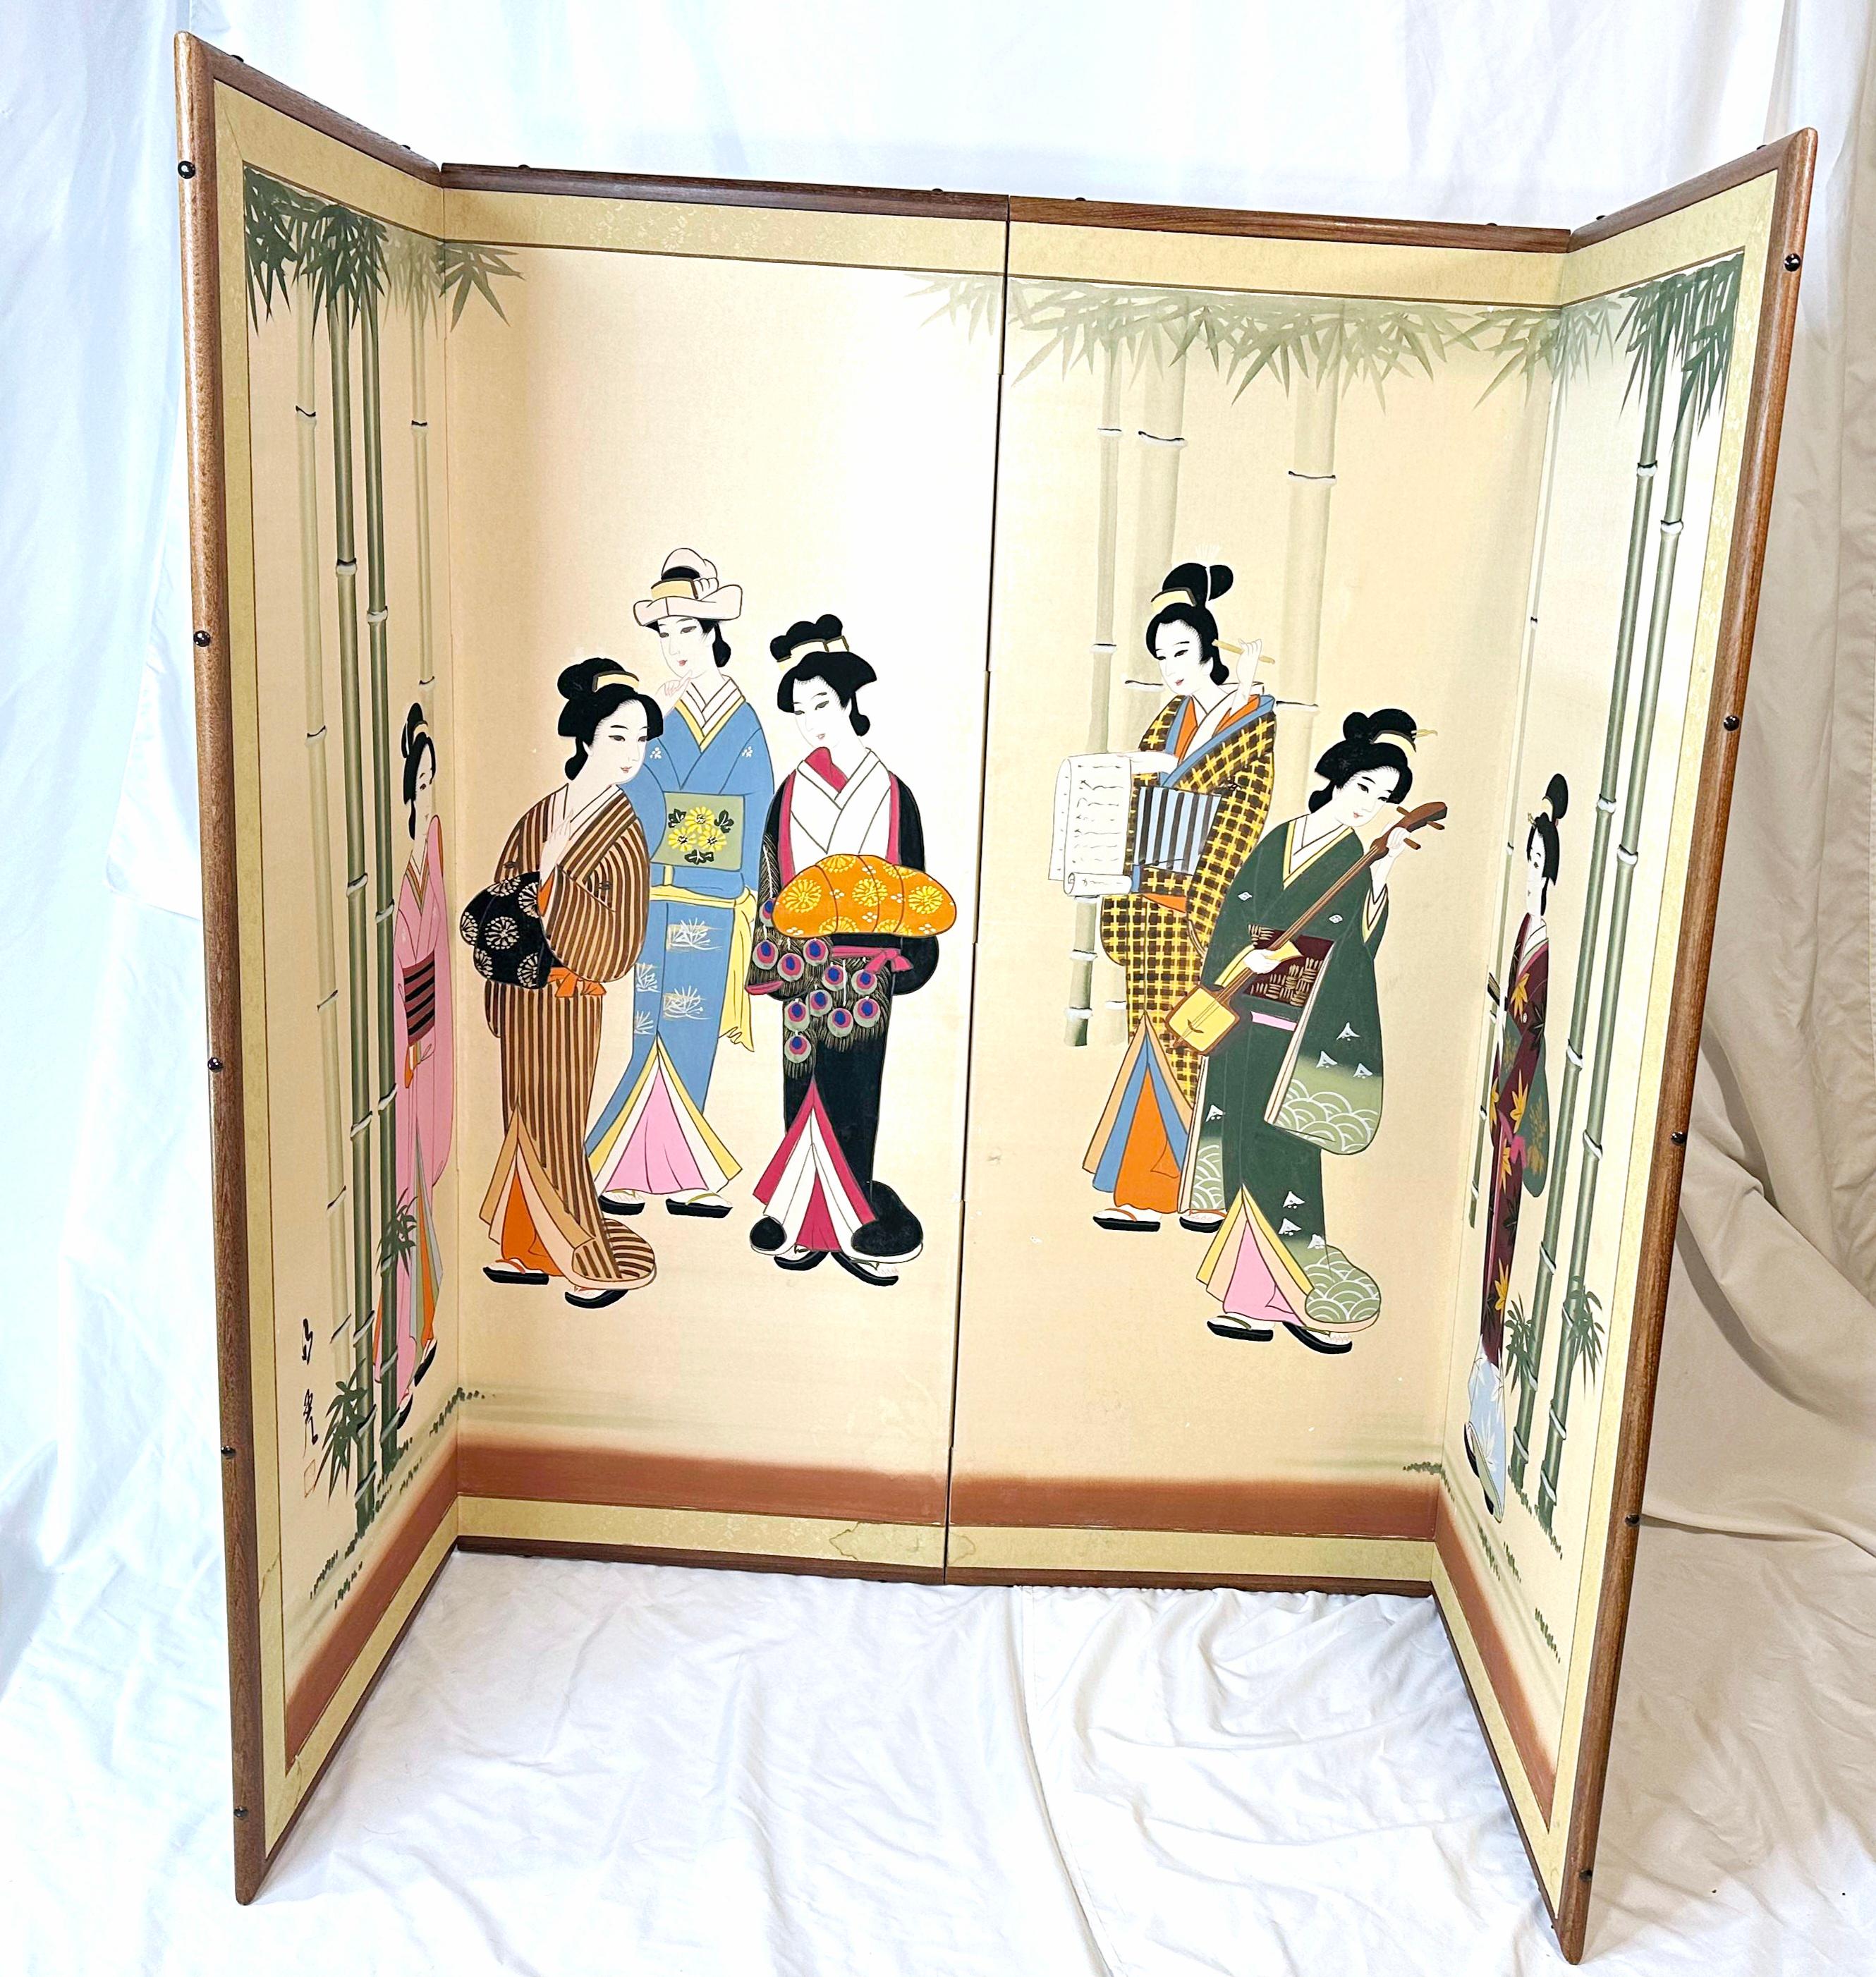 1960-1970s
Soie peinte à la main.
Support en papier de riz. 
Fabriqué au Japon. 
Six geishas colorées entourées de bambous.
De petits détails, un shamisen, ou guitare japonaise, un rouleau de papier de riz, une Geisha portant un kimono, ou hikizuri.